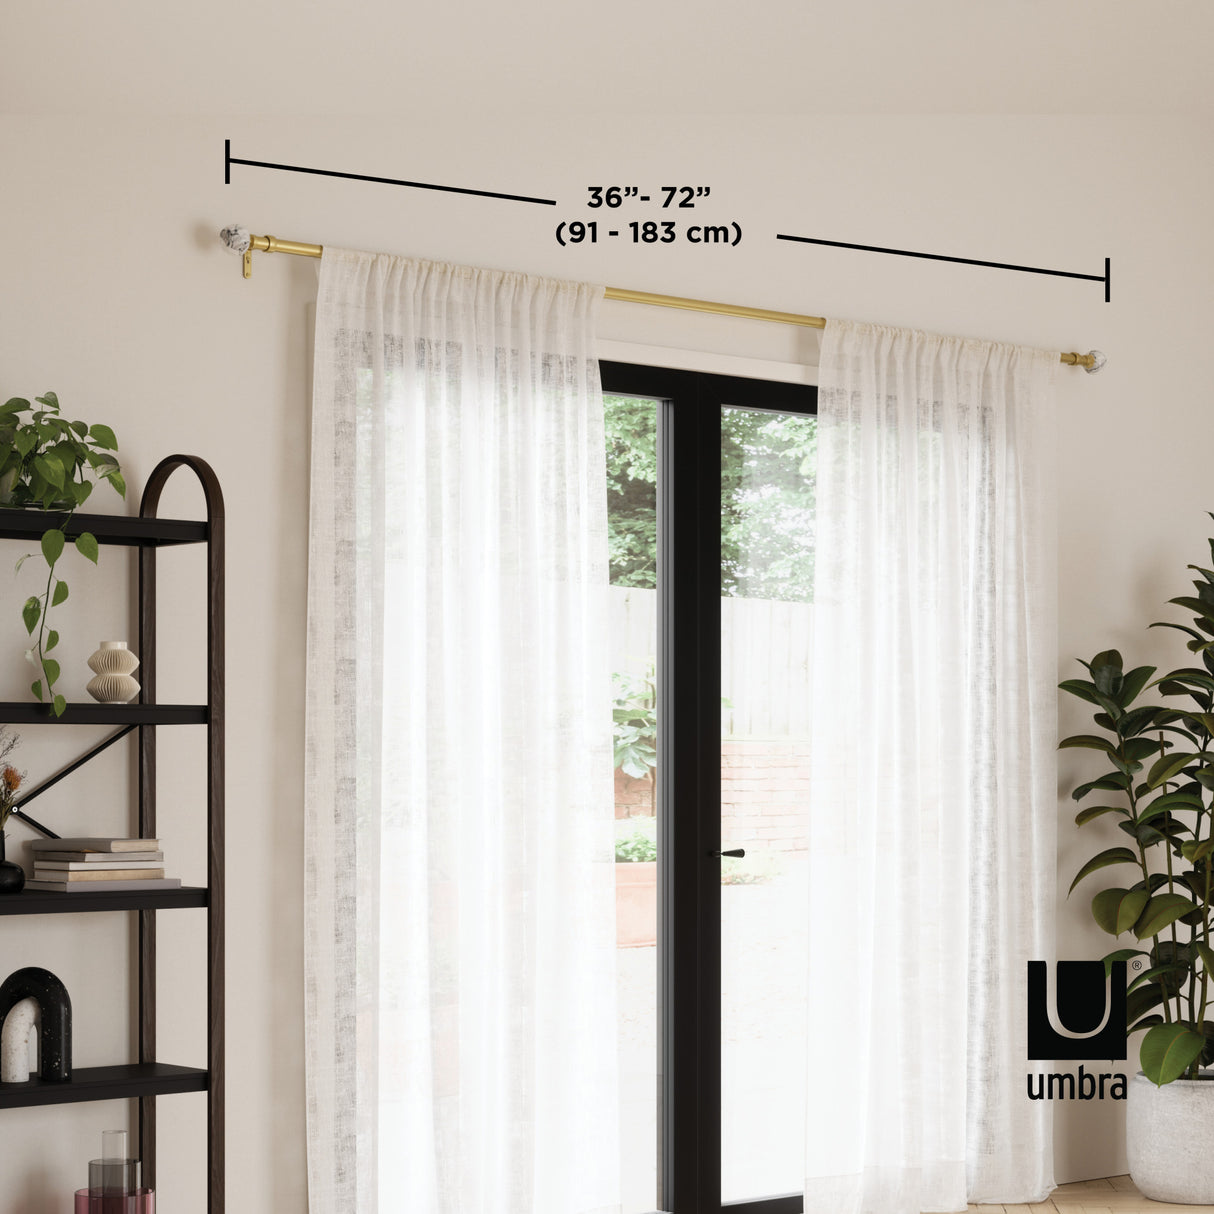 Single Curtain Rods | color: Eco-Friendly Gold | size: 36-72" (91-183 cm) | diameter: 1" (2.5 cm)